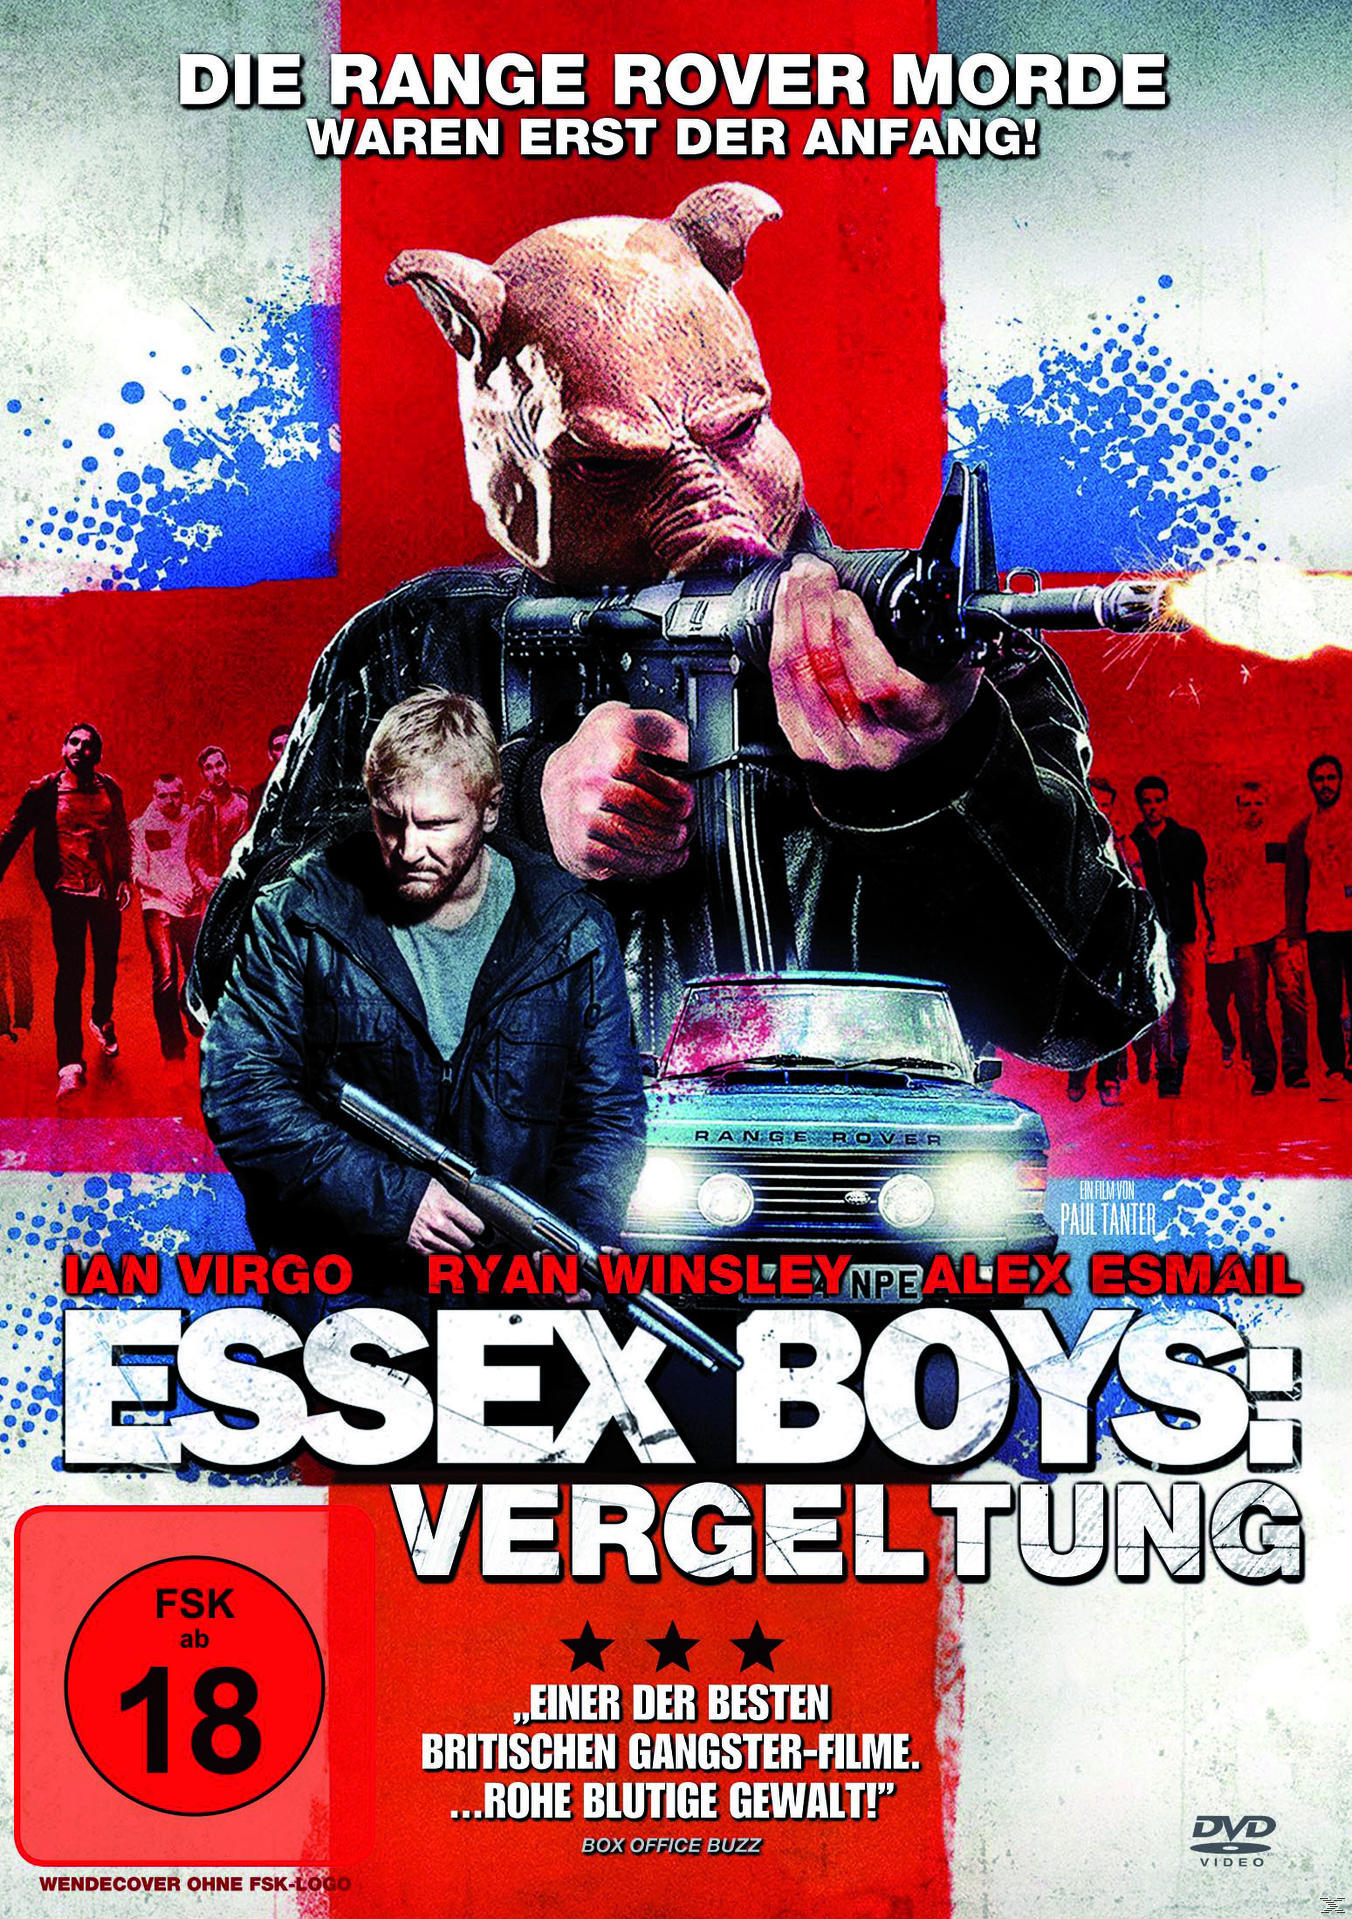 Vergeltung Essex Boys: DVD